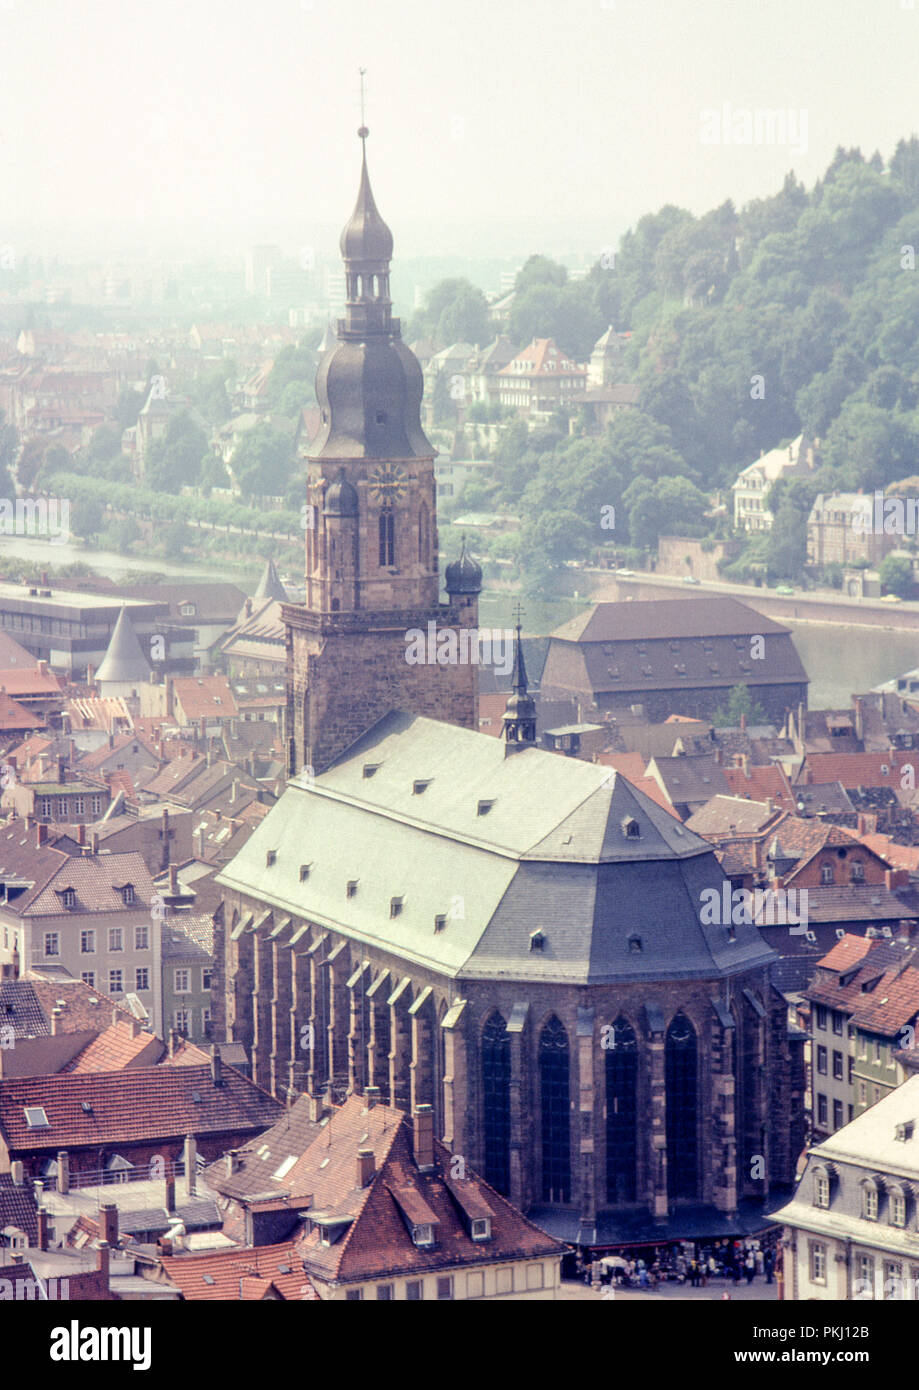 Iglesia del Espíritu Santo (Heiliggeistkirche), Heidelberg, Alemania. Como se ve desde el castillo de Heidelberg. Archivo original imagen tomada en septiembre de 1979. Foto de stock